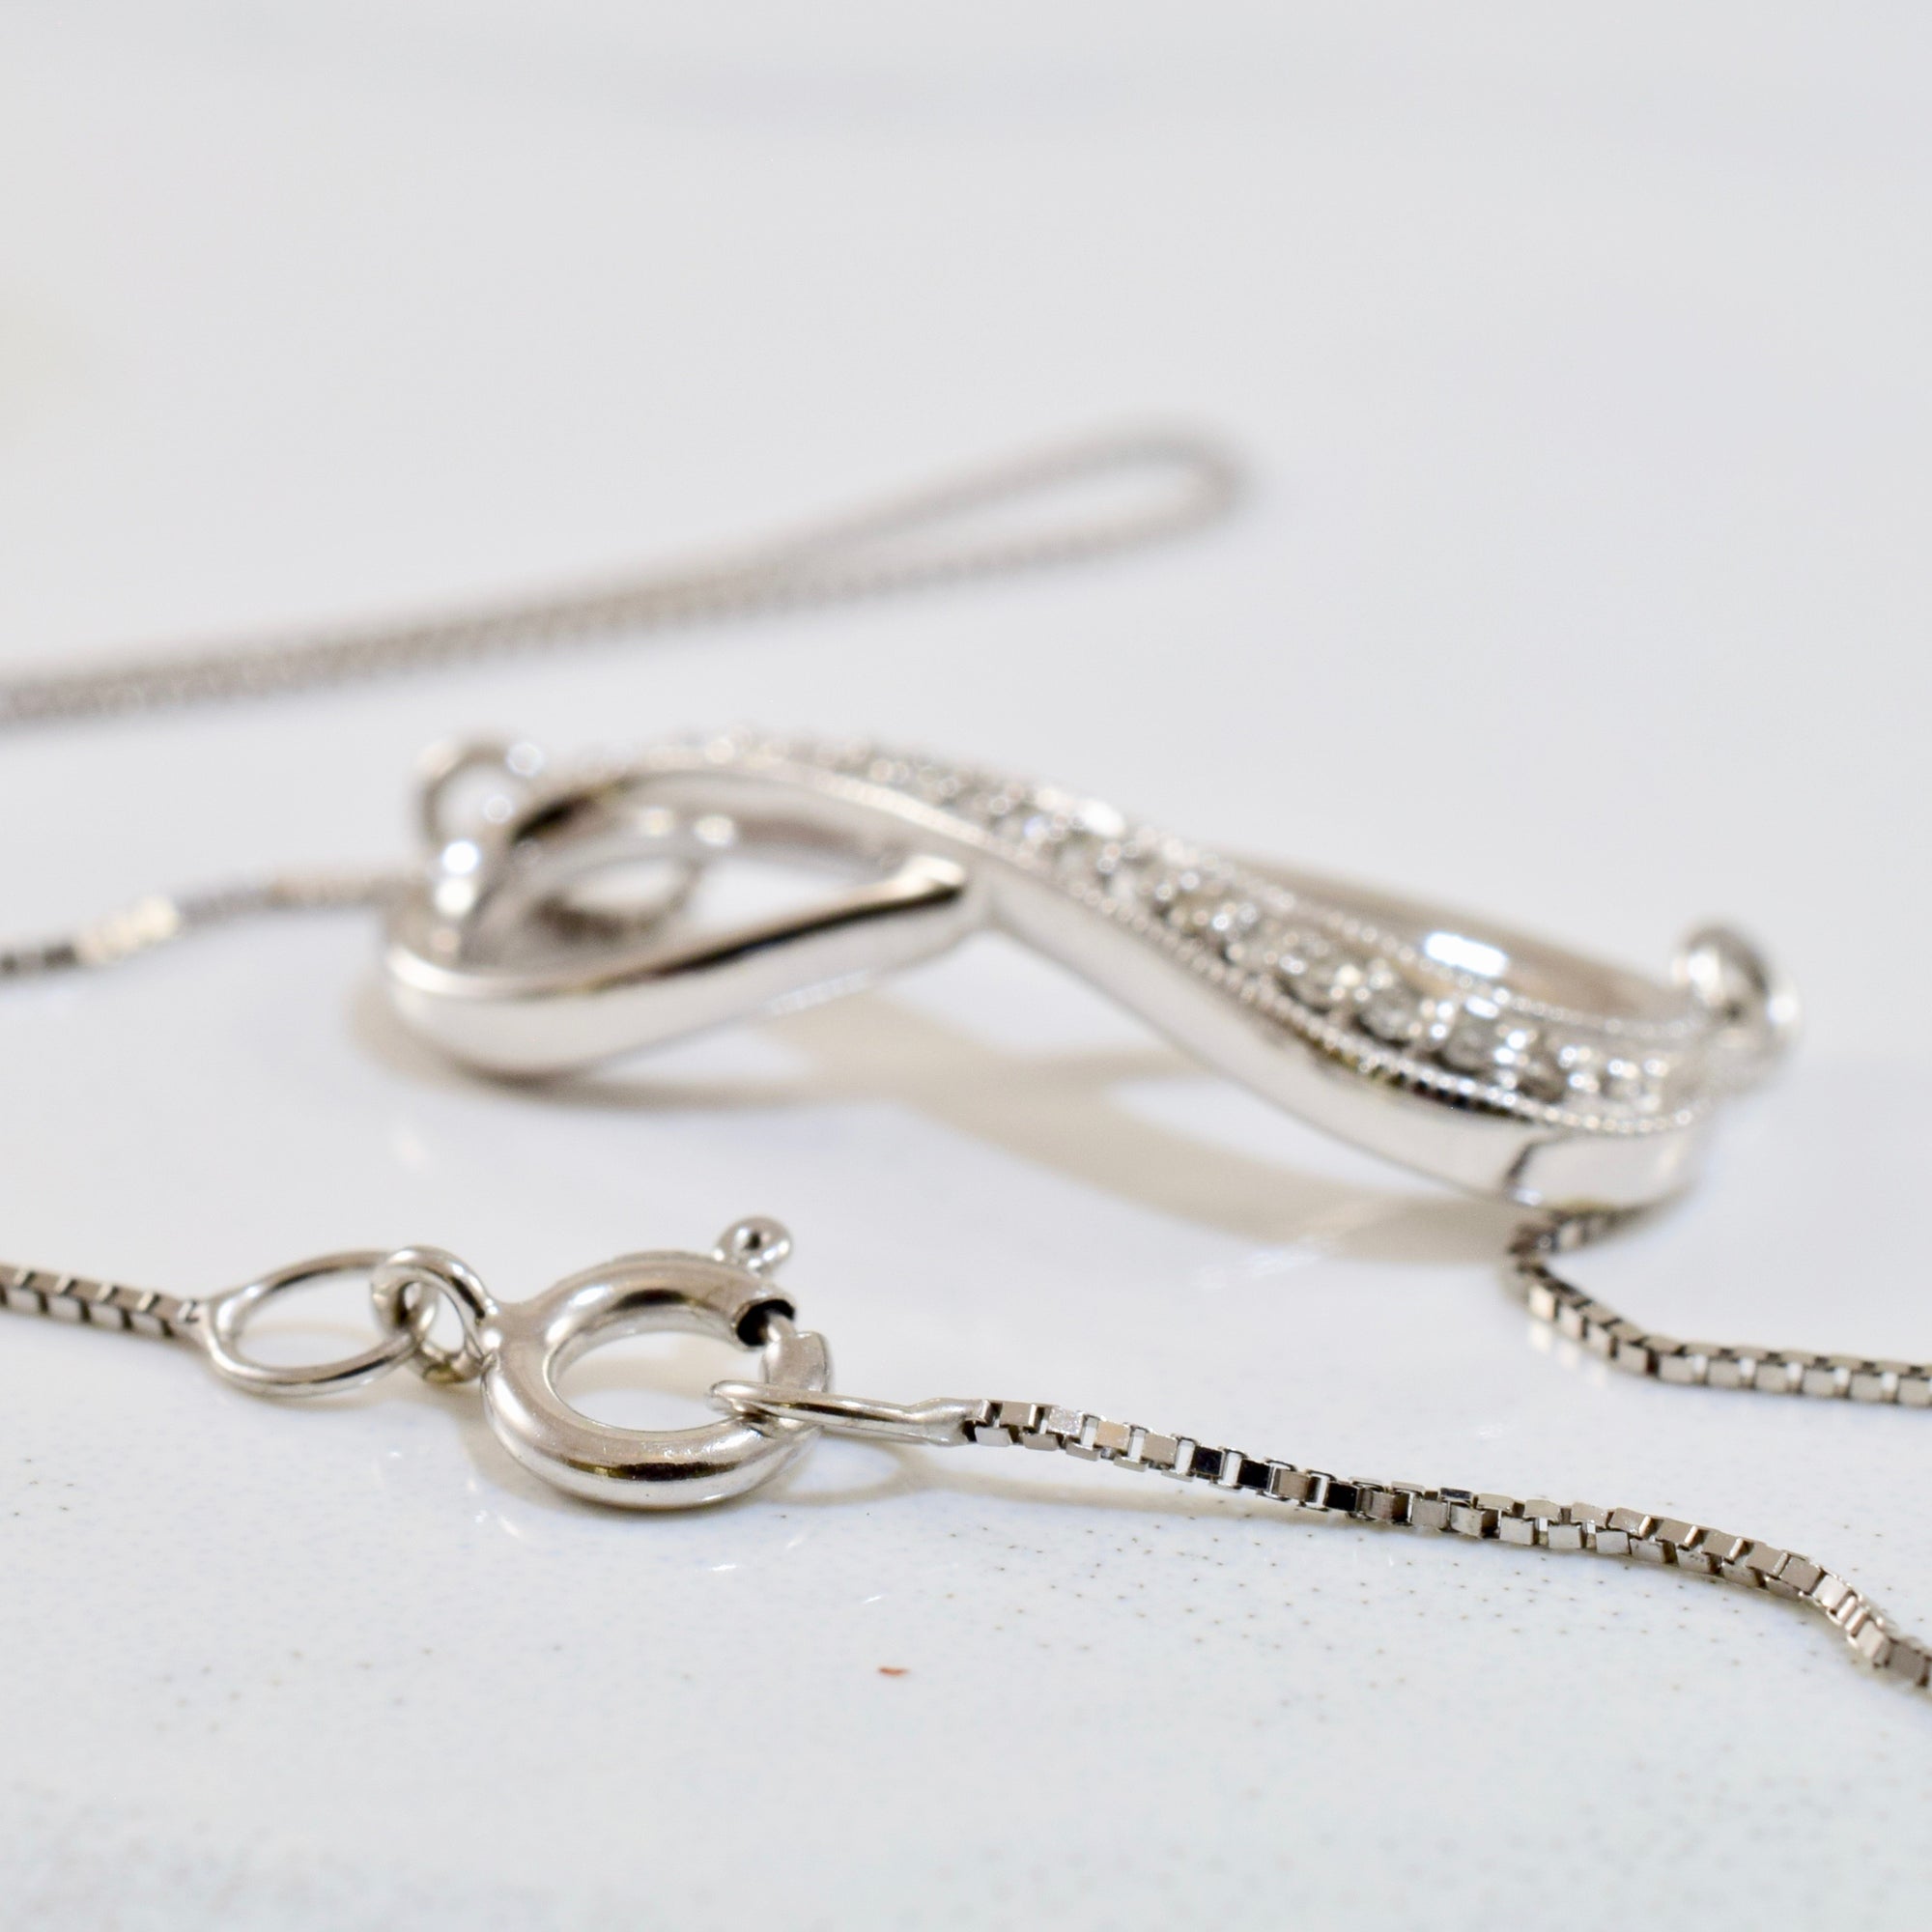 Diamond Infinity Pendant and Necklace | 0.04 ctw SZ 19